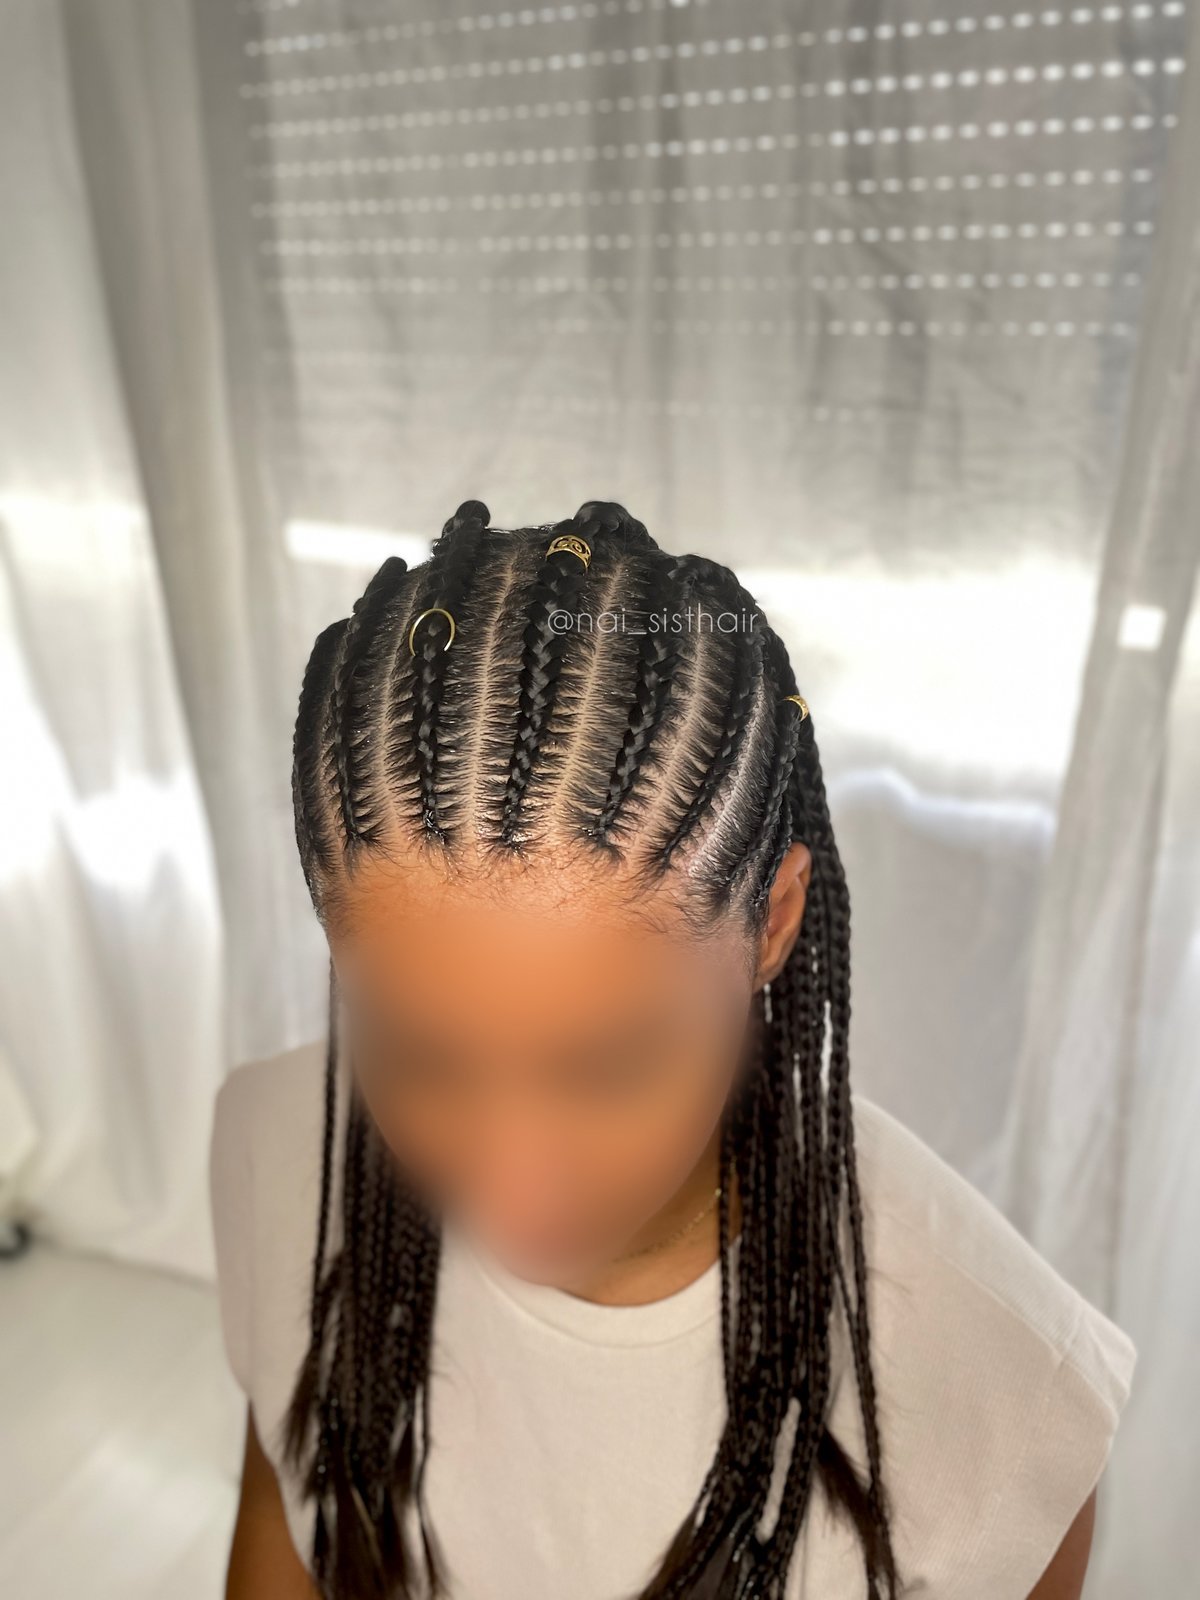 Demi tête et braids - Idées Coiffure Afro - tresses - vanille